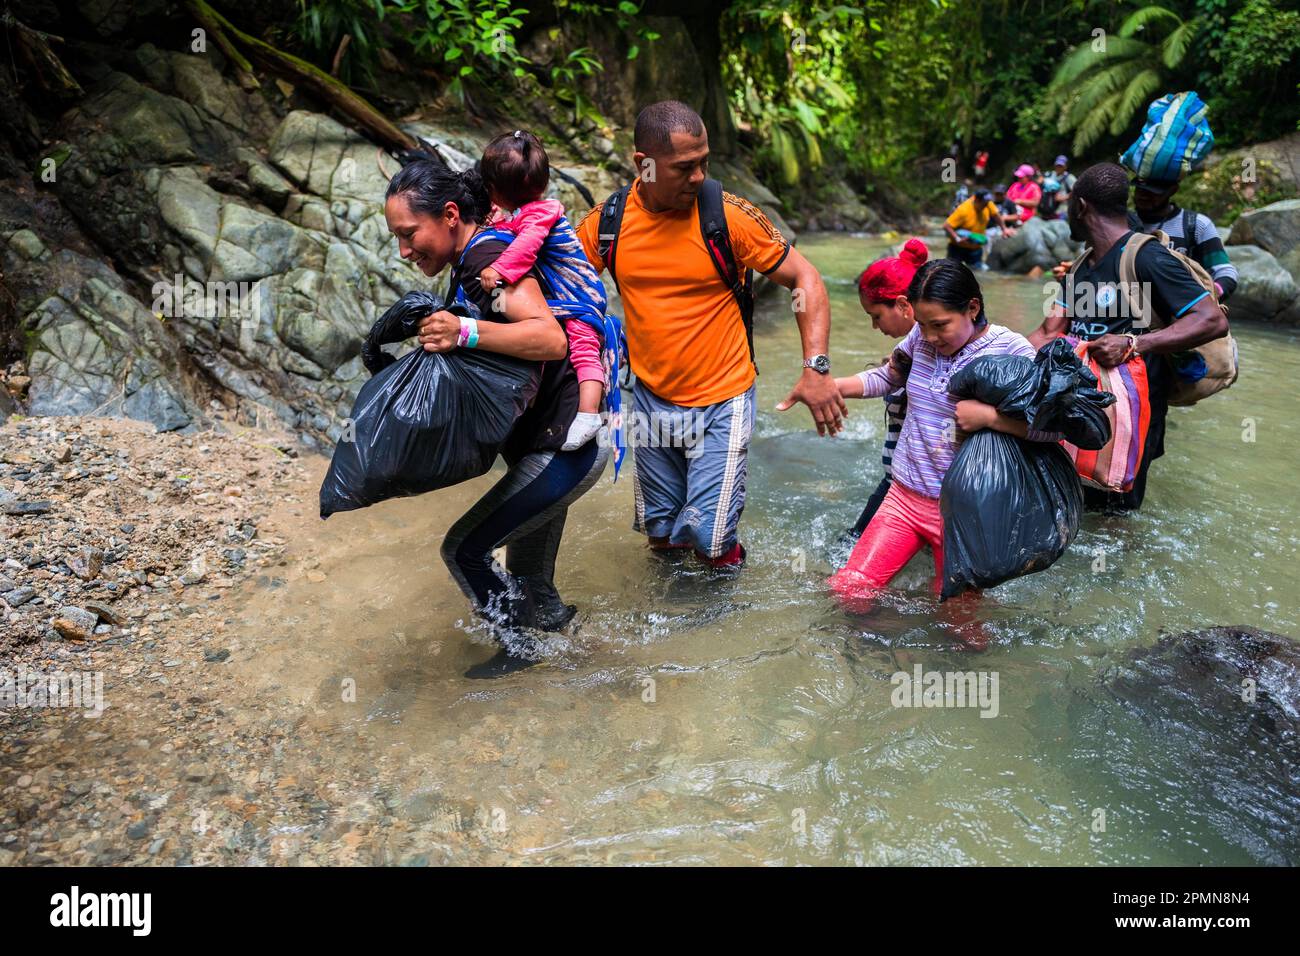 Une famille de migrants équatoriens traverse la rivière dans la jungle sauvage et dangereuse du fossé Darién entre la Colombie et Panamá. Banque D'Images